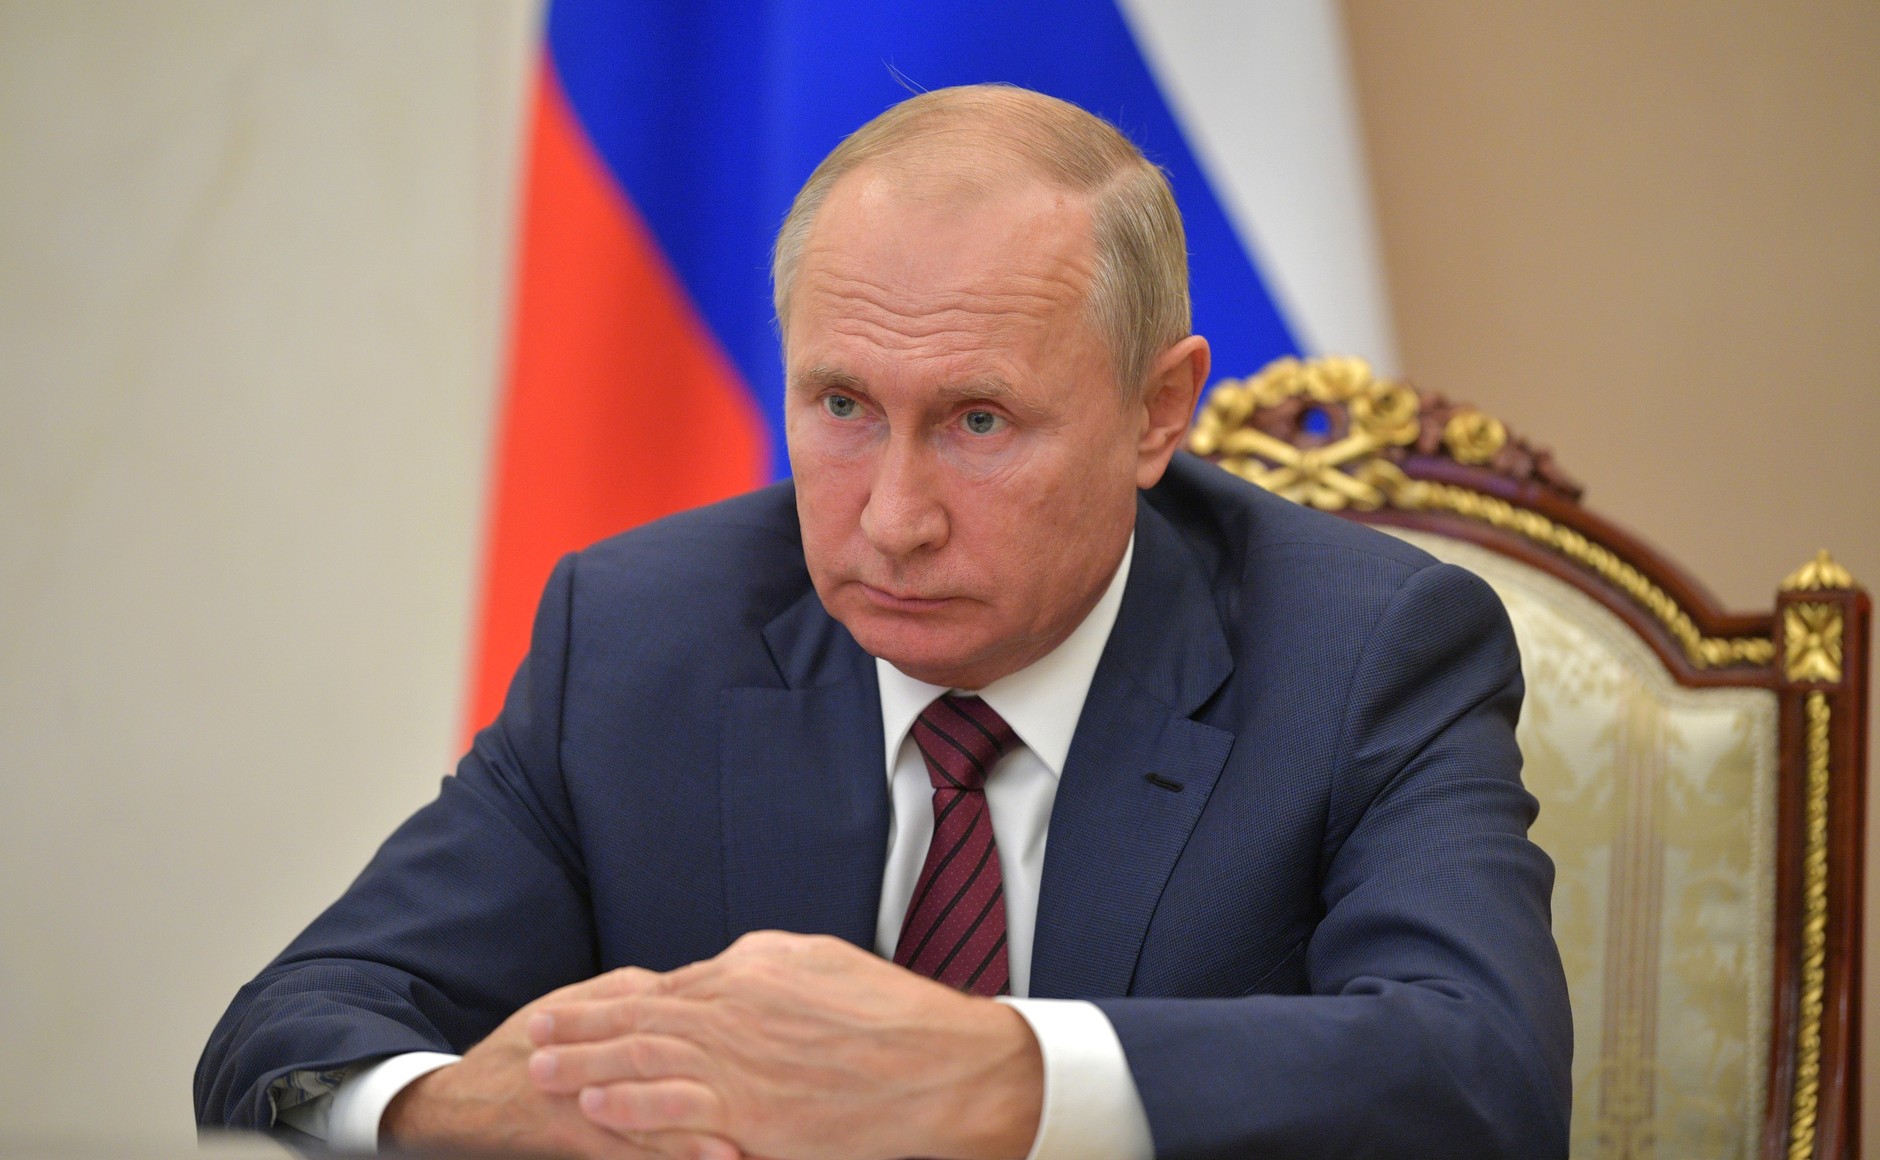 Путин пообещал проиндексировать пенсии по уровню фактической инфляции